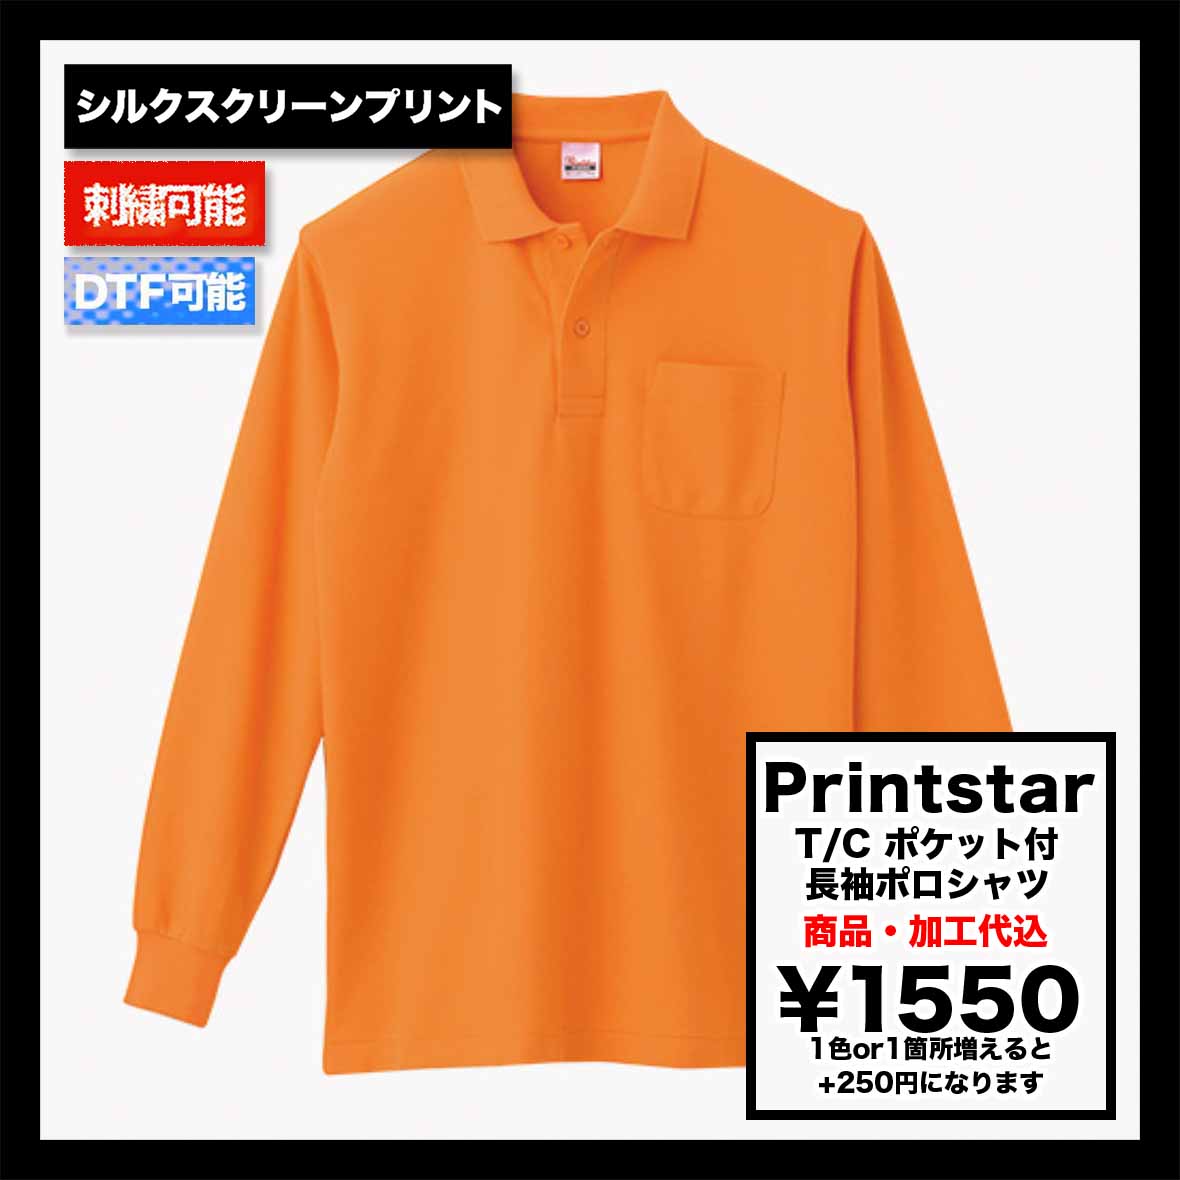 Printstar プリントスター 5.8 oz T/C ポケット付 長袖ポロシャツ (品番00169-VLP)